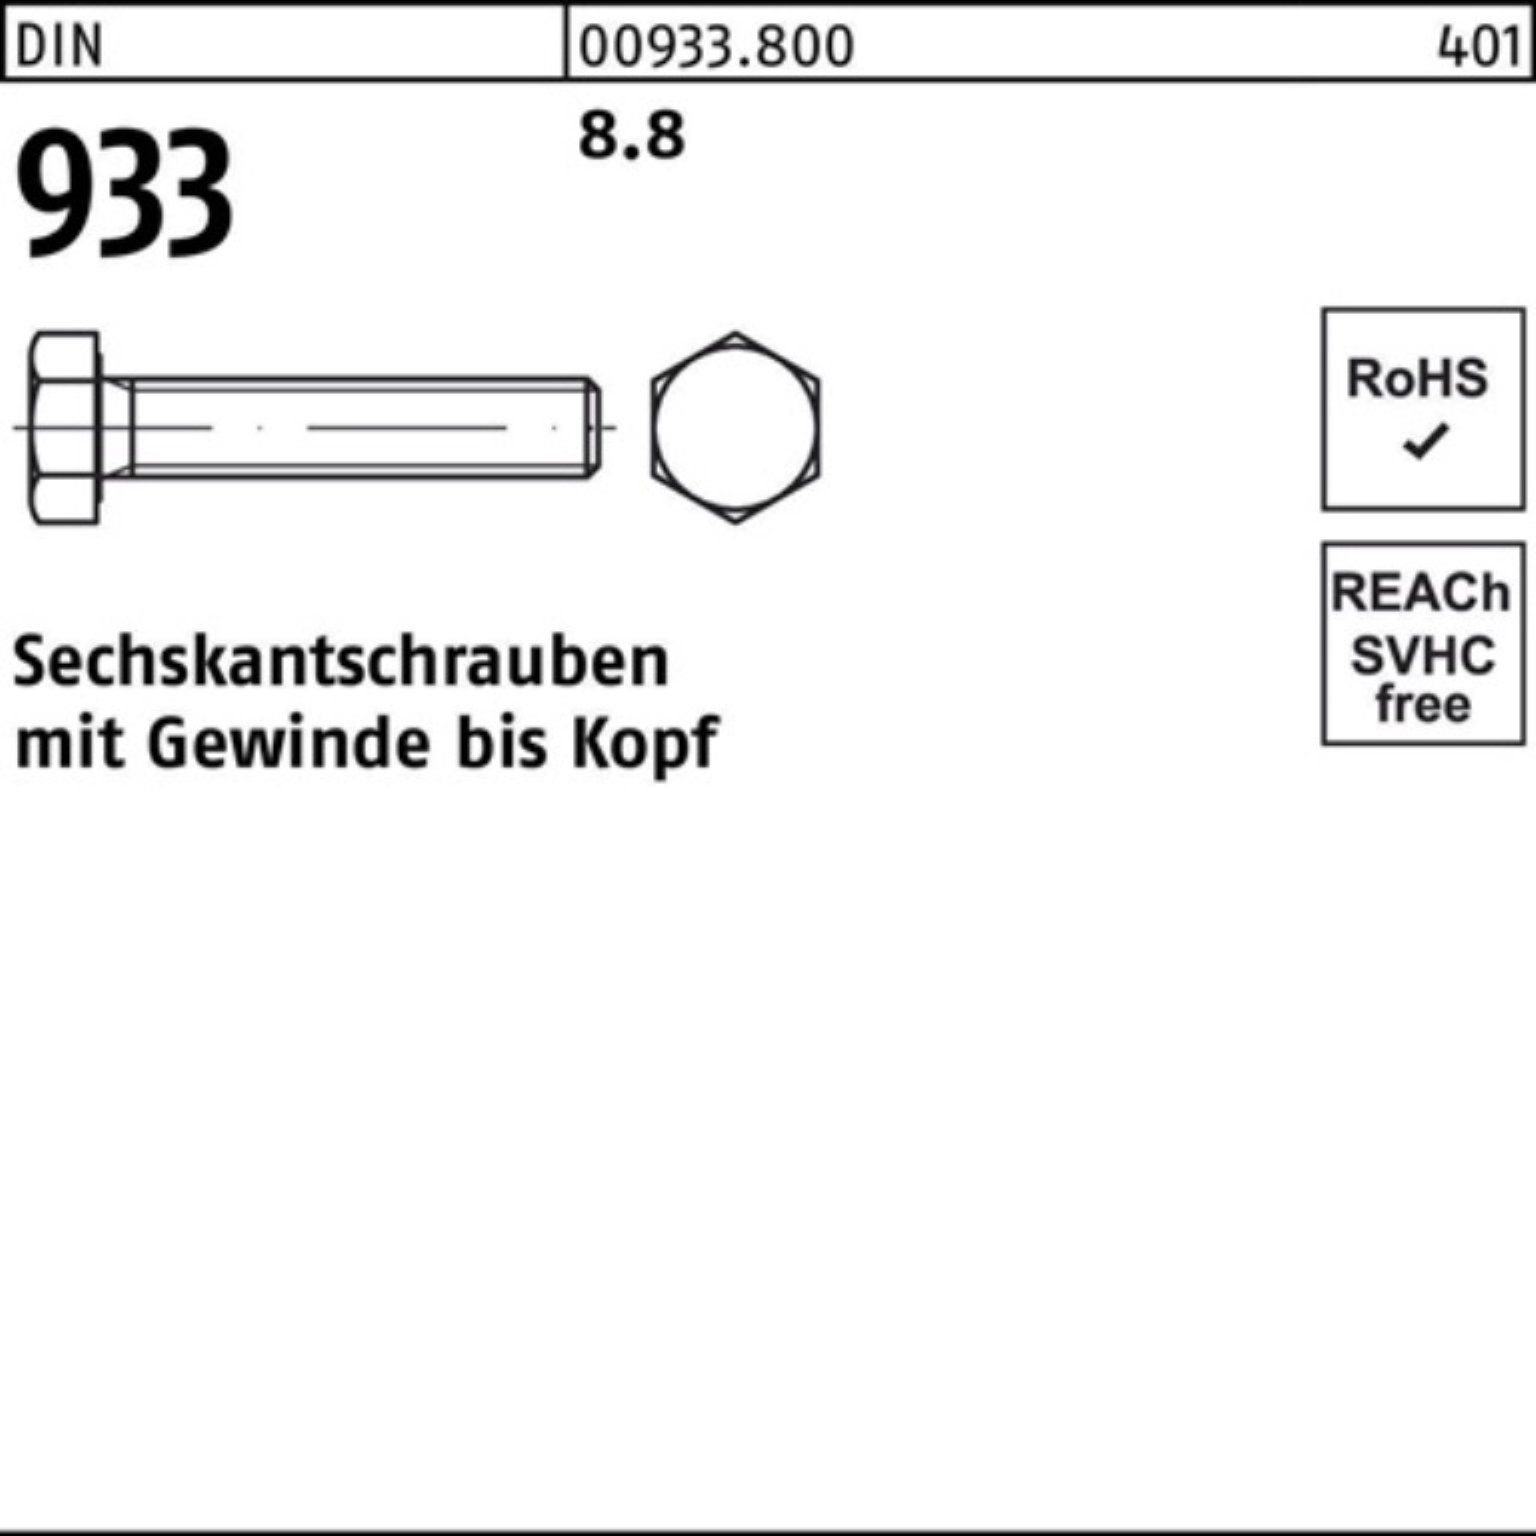 Reyher Sechskantschraube VG 933 Sechskantschraube 100er Pack 50 45 DIN DIN Stück 8.8 933 M18x